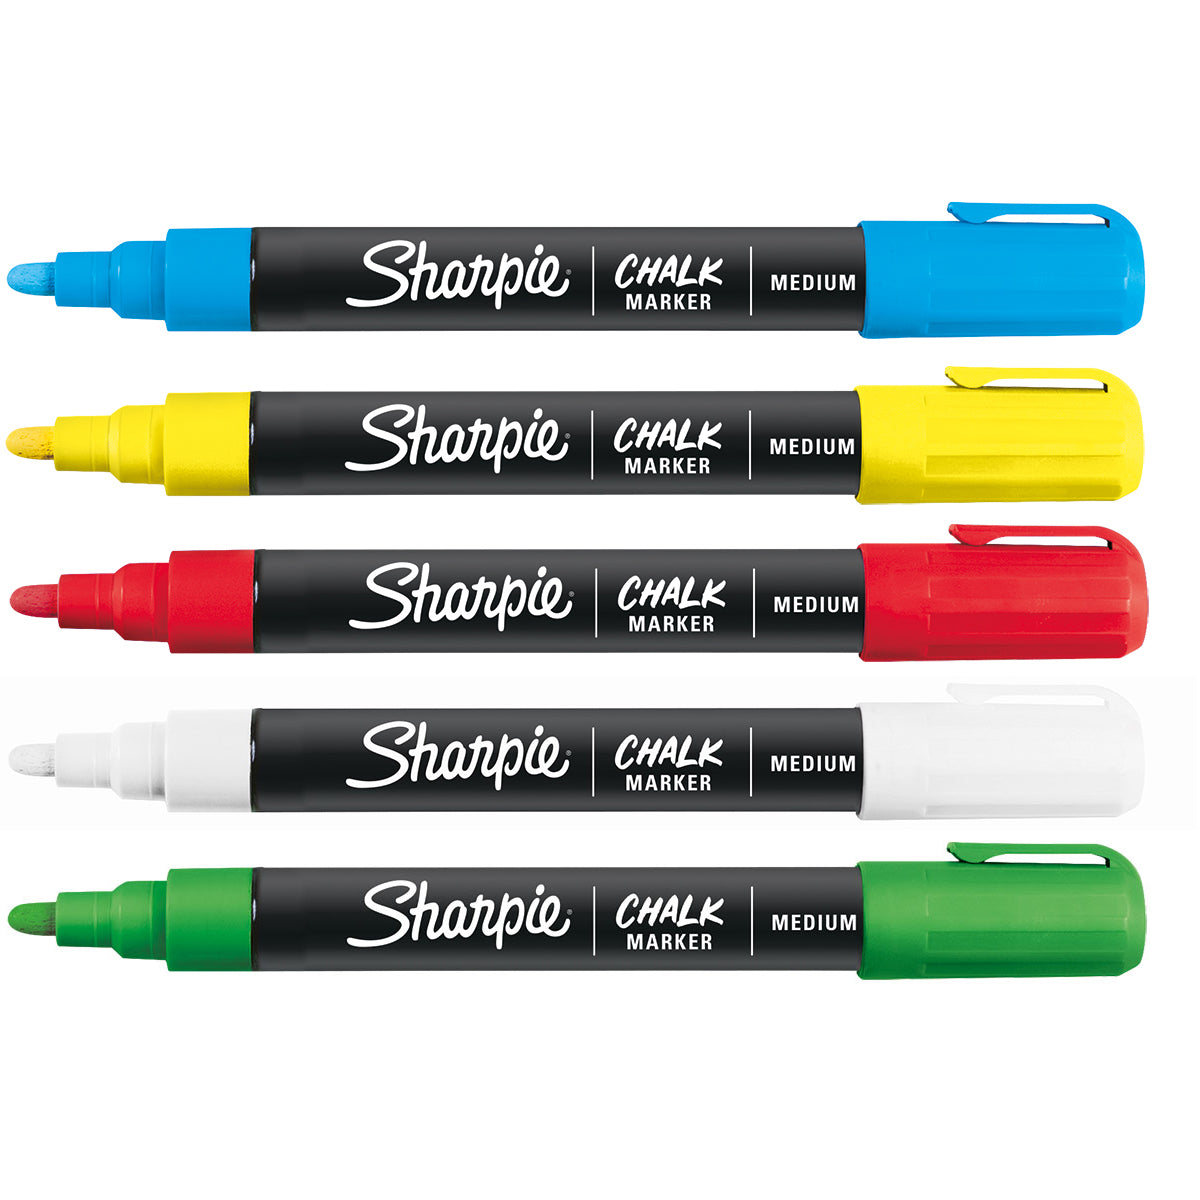 sharpie chalk marker colors